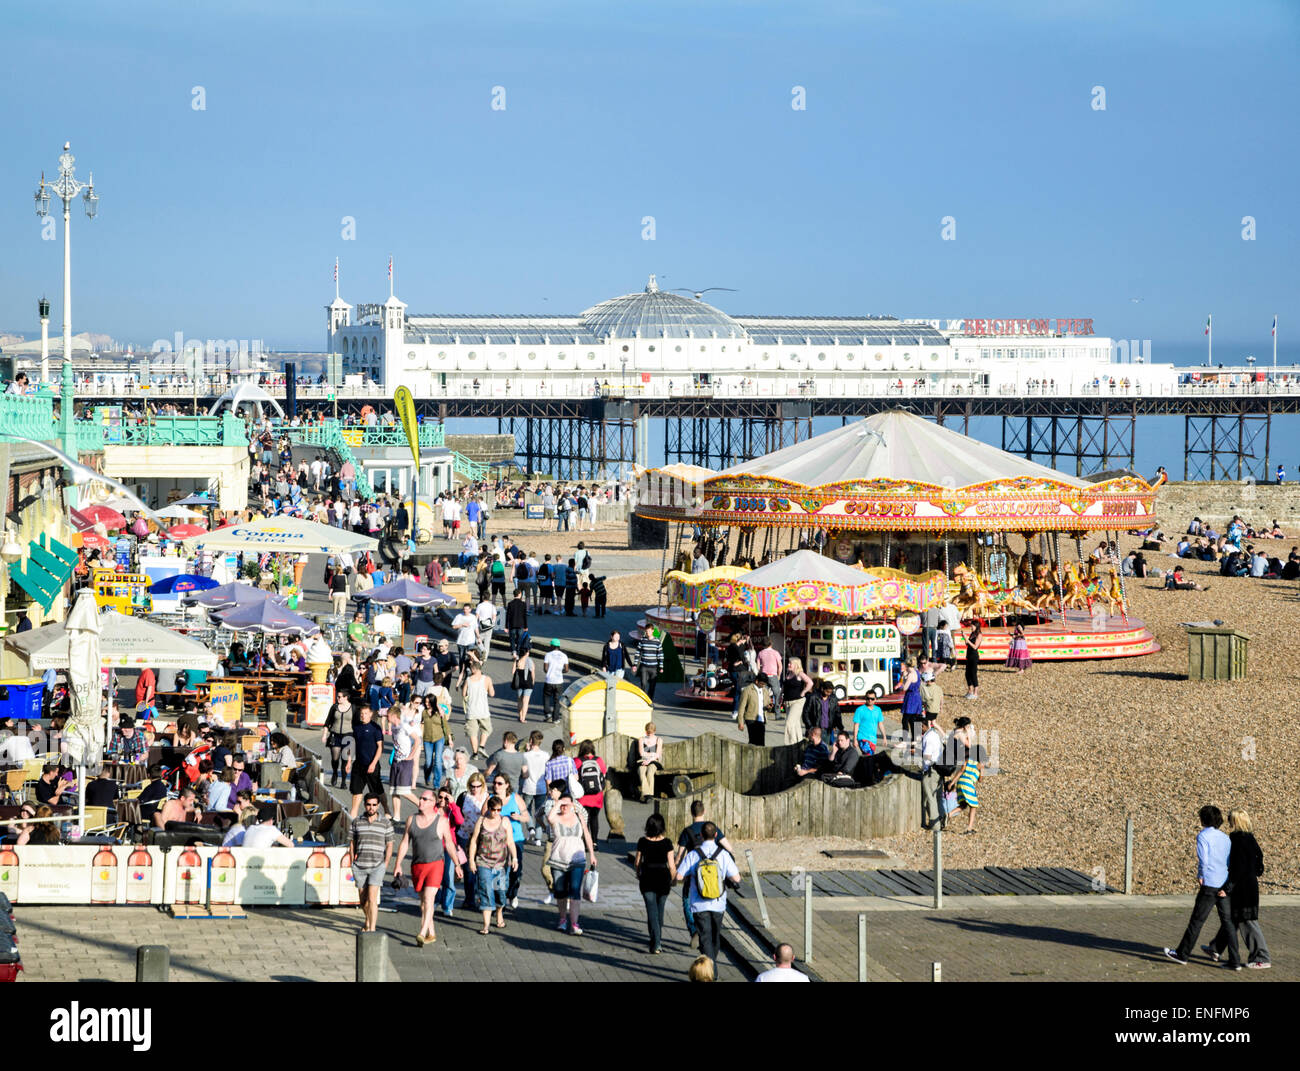 Rassemblement des foules de printemps pour profiter le temps exceptionnellement chaud : la plage de Brighton, East Sussex, Angleterre Banque D'Images